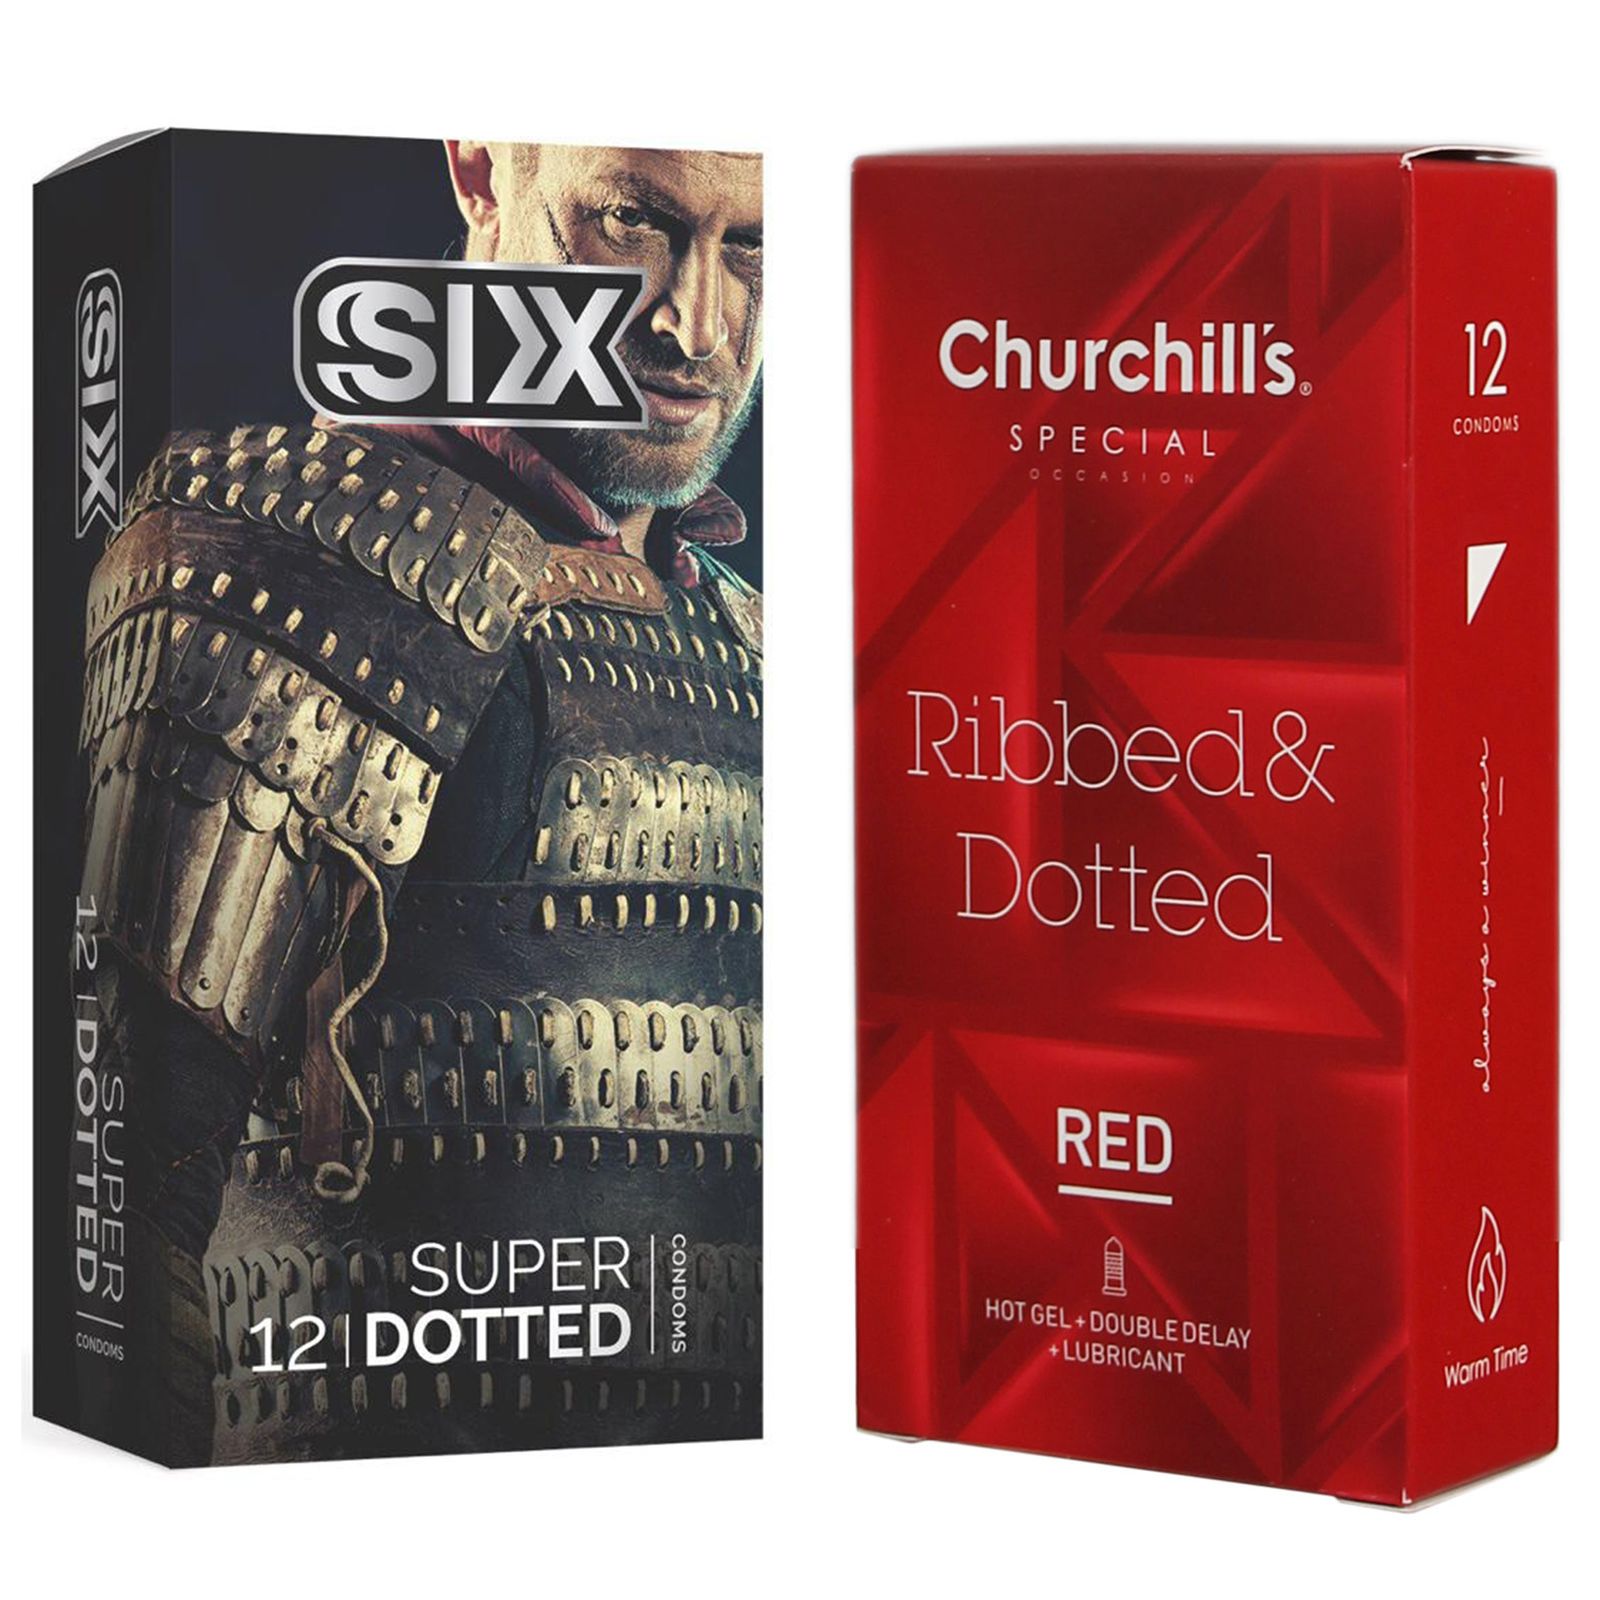 کاندوم چرچیلز مدل Ribbed & Dotted Red بسته 12 عددی به همراه کاندوم سیکس مدل خاردار بسته 12 عددی -  - 2